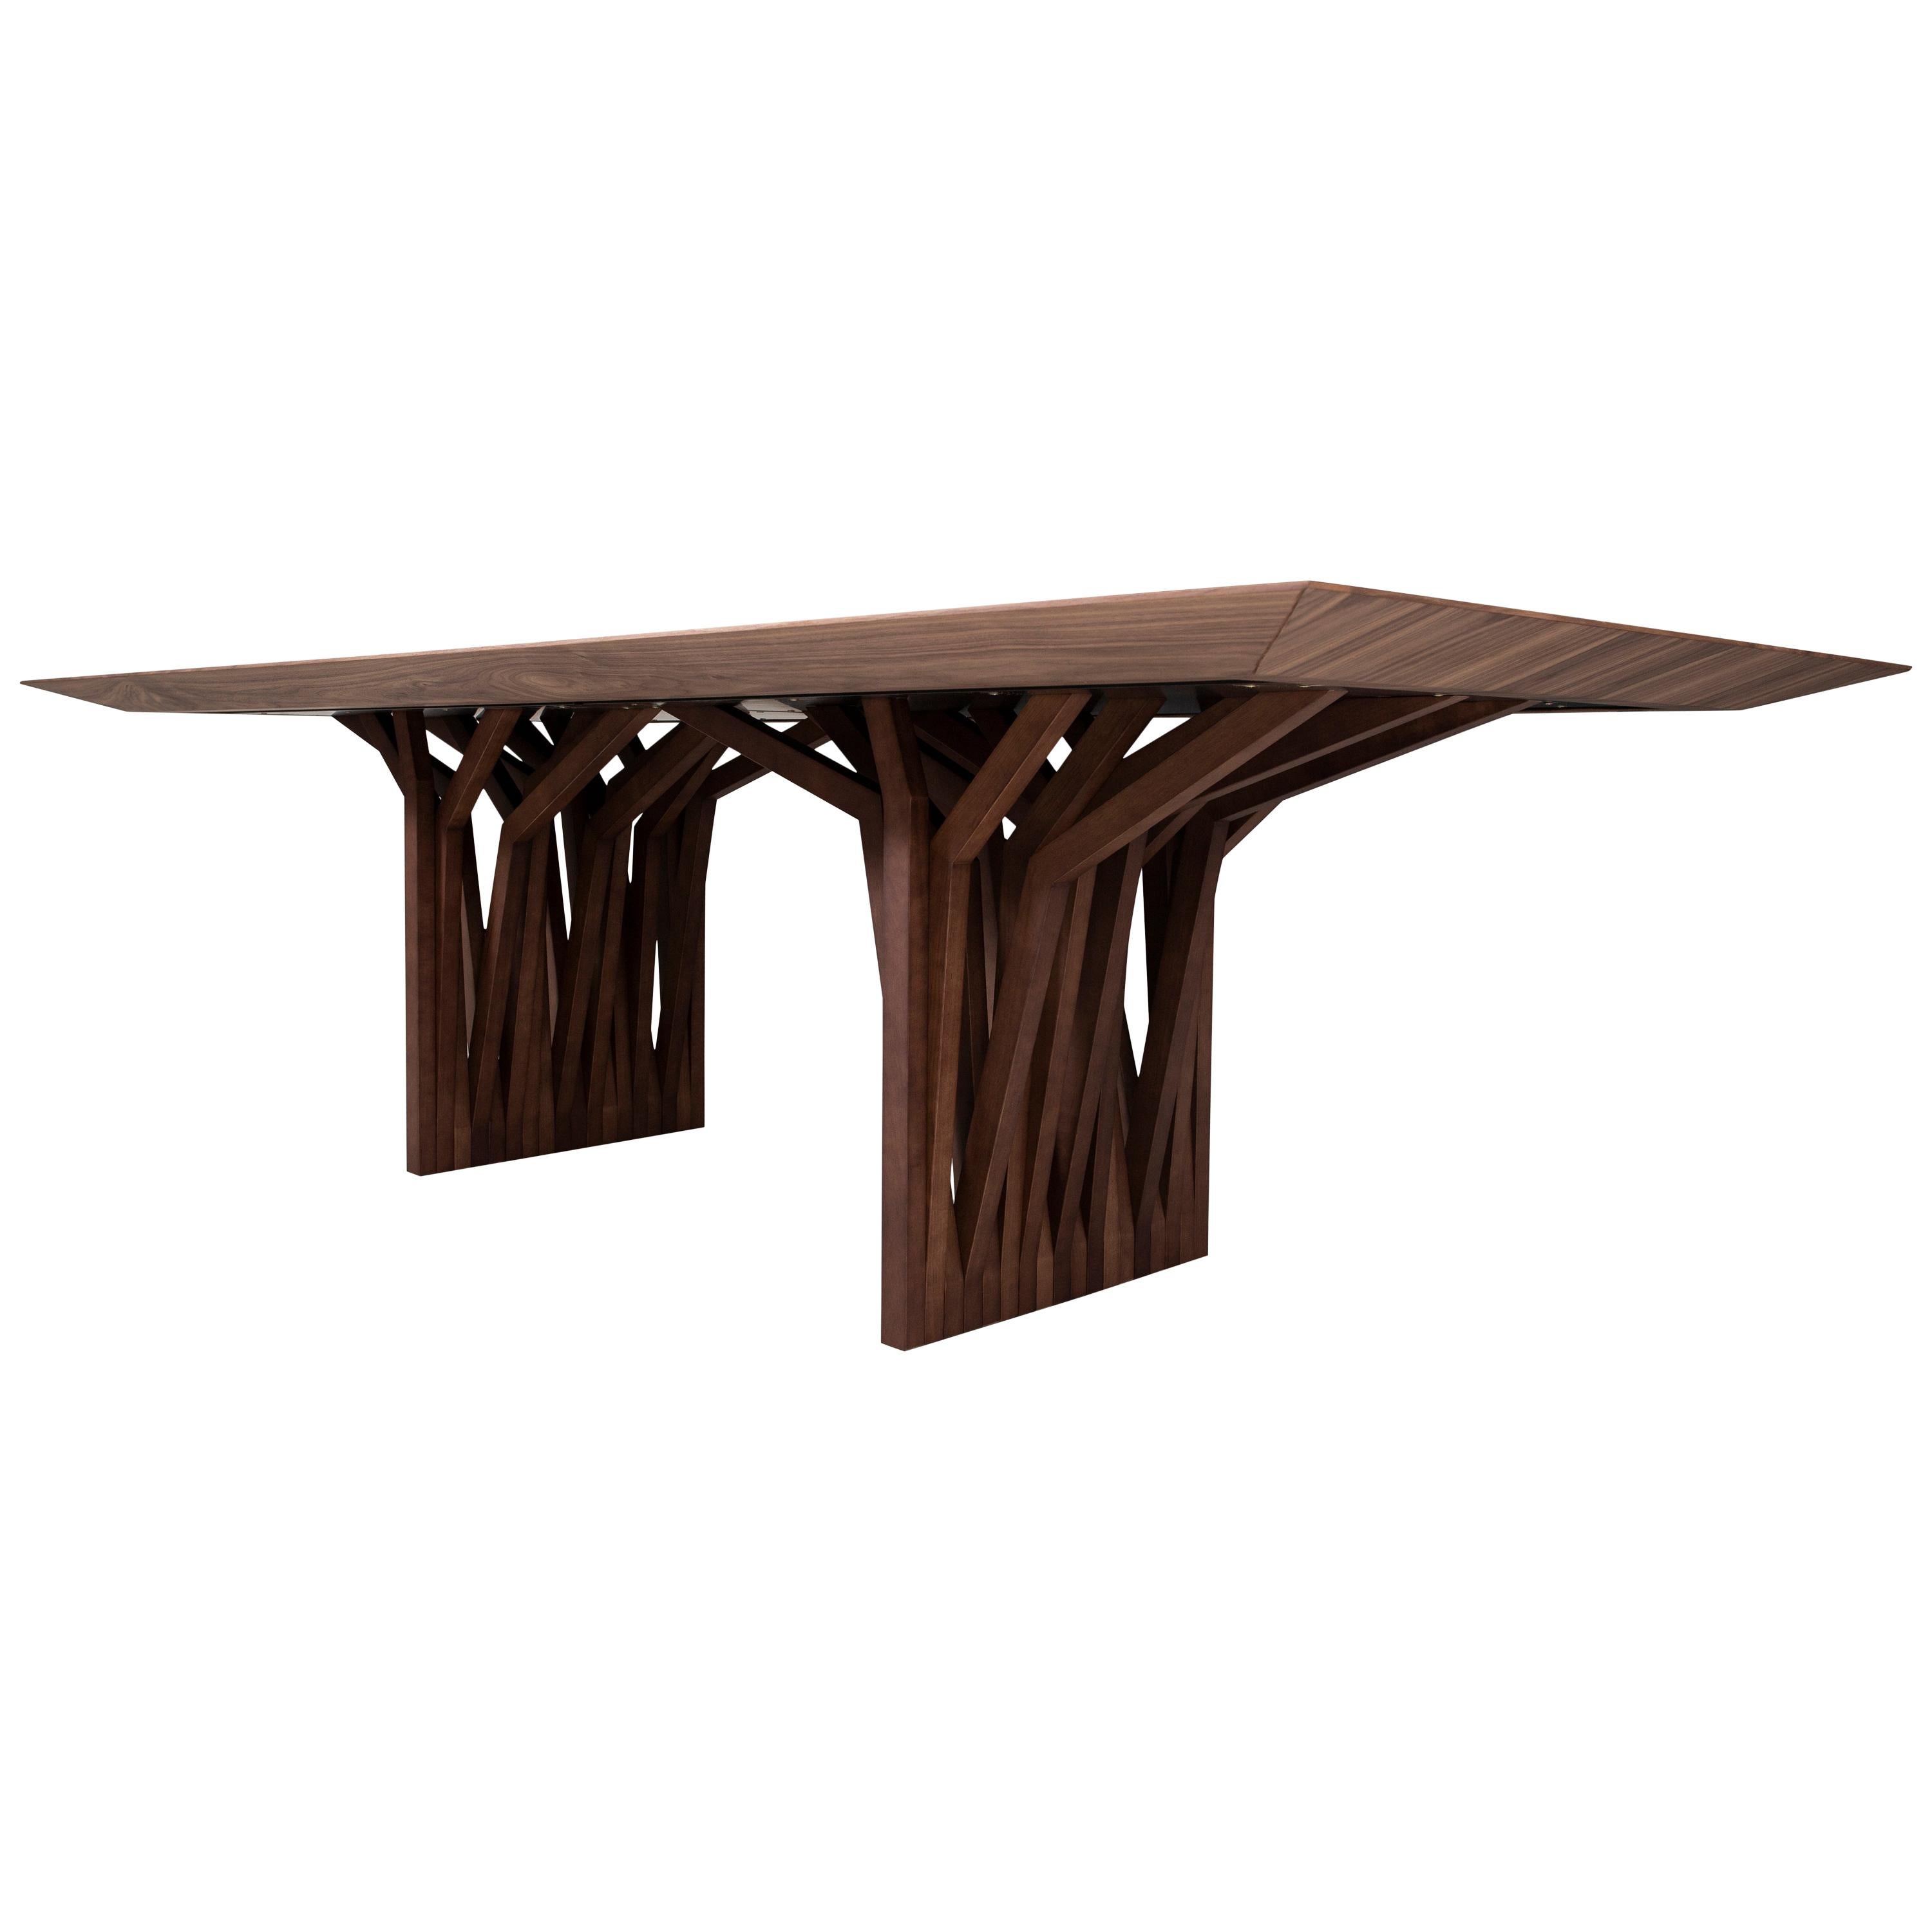 La table de salle à manger Radi est un chef-d'œuvre avec un plateau en placage de bois finition noyer et une base de table originale en forme d'ancre de toit, inspirée par les racines aériennes des arbres. Cette table de salle à manger est une pièce